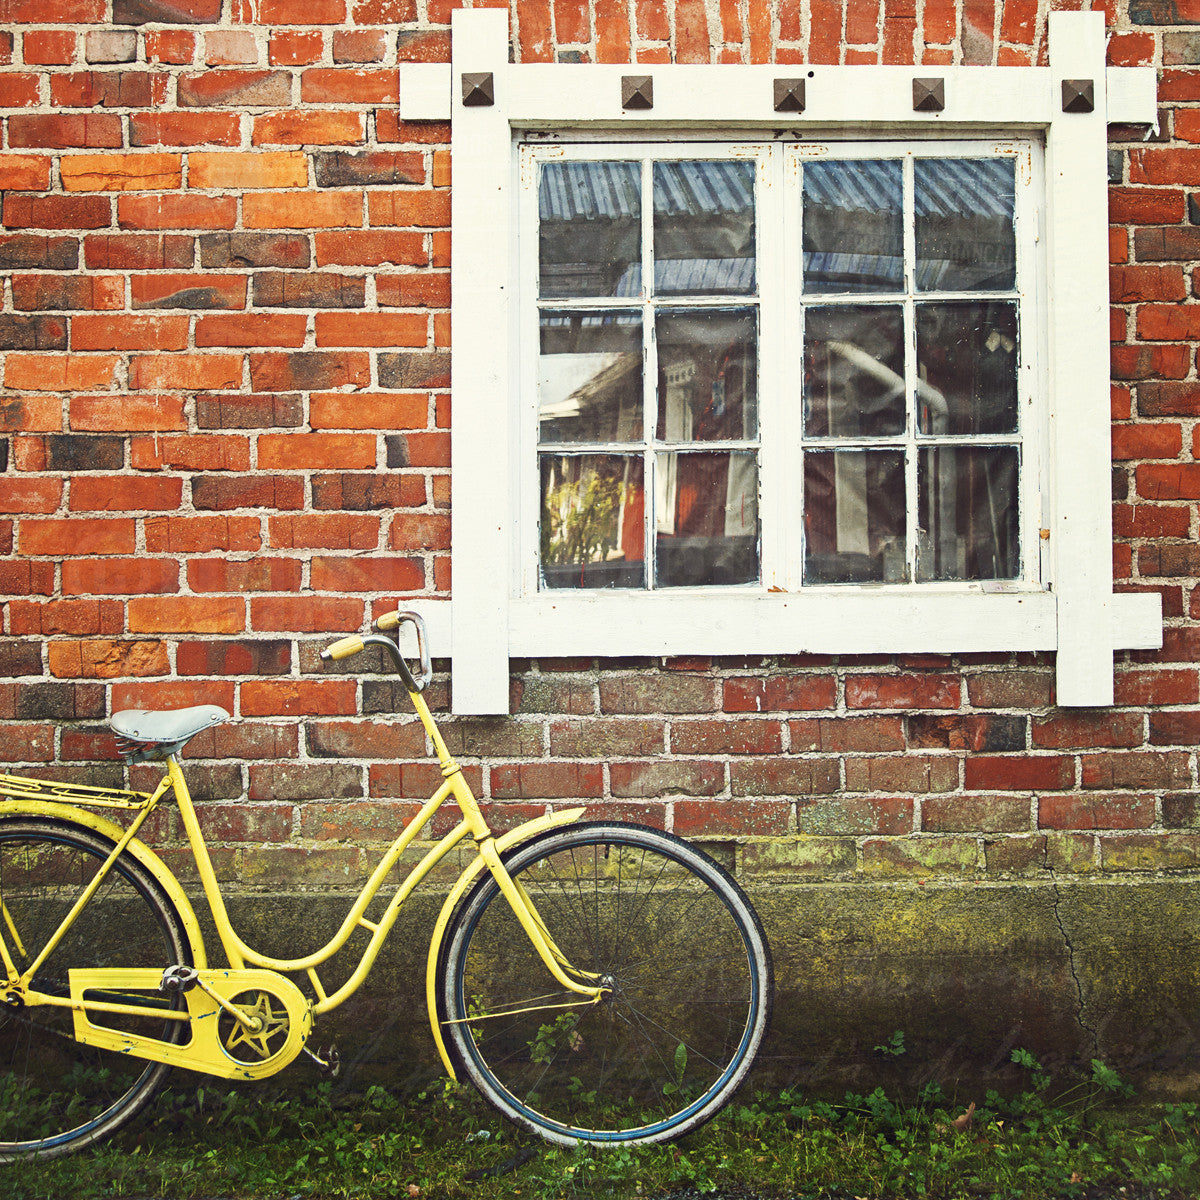 Bicicleta en la granja en Kokemäki Finlandia<br> Impresión cromogénica de bellas artes de archivo